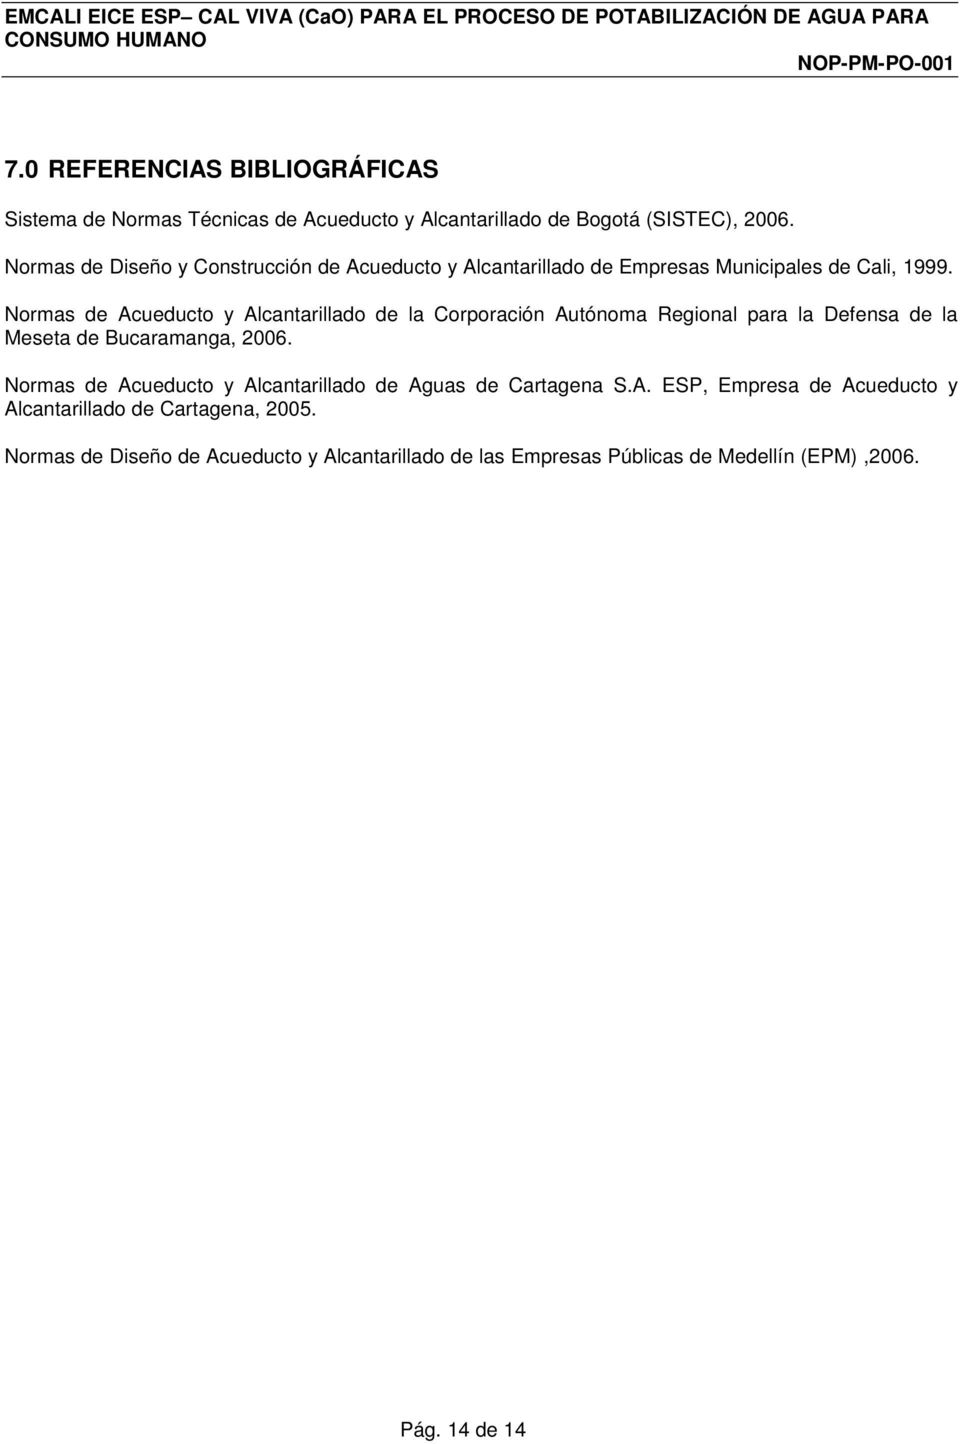 Normas de Acueducto y Alcantarillado de la Corporación Autónoma Regional para la Defensa de la Meseta de Bucaramanga, 2006.